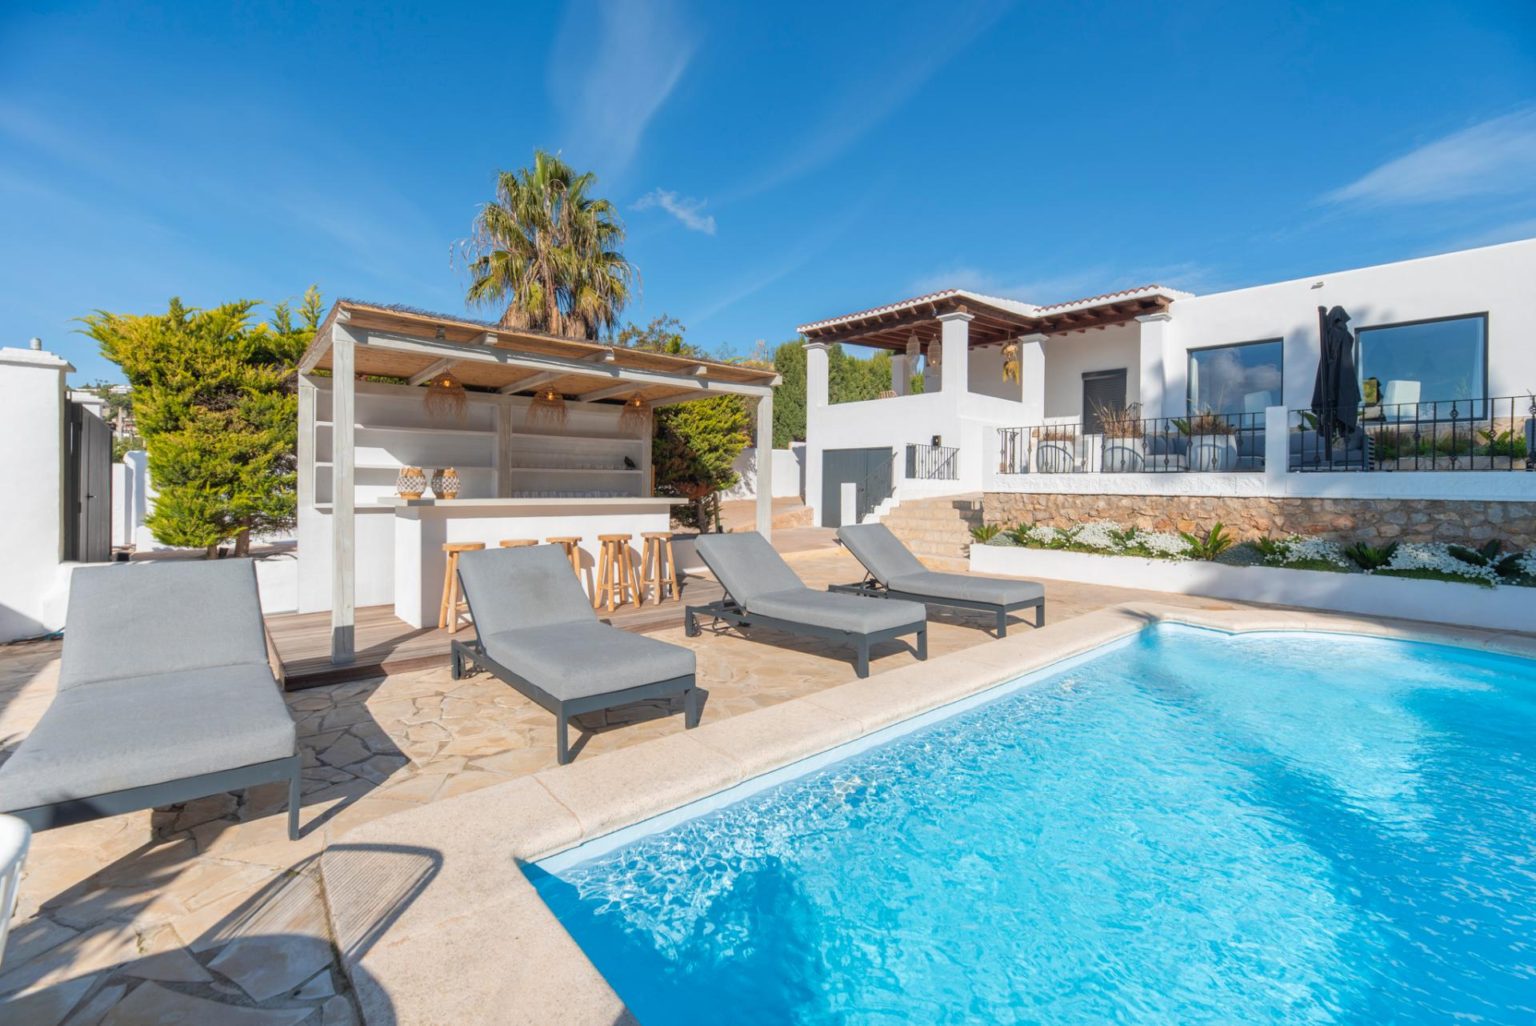 Villa confortable avec vue sur la montagne près de la ville d’Ibiza